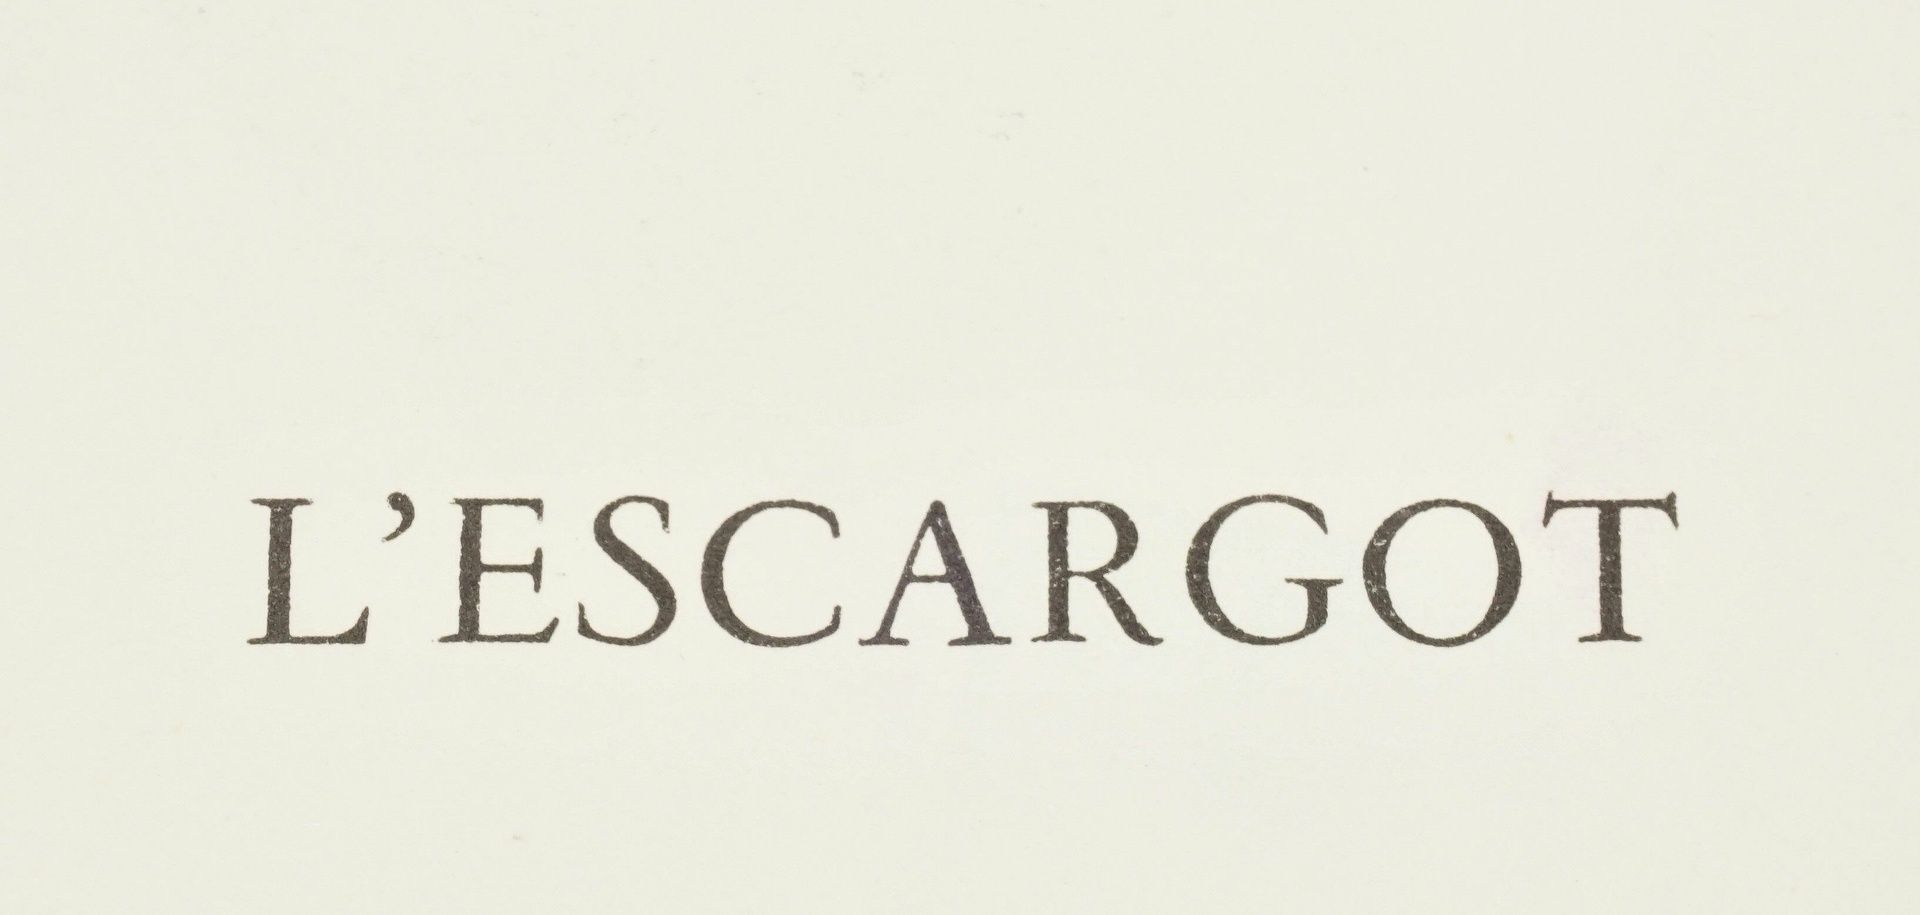 Henri Matisse, "L'escargot" (Die Schnecke) - Image 4 of 5